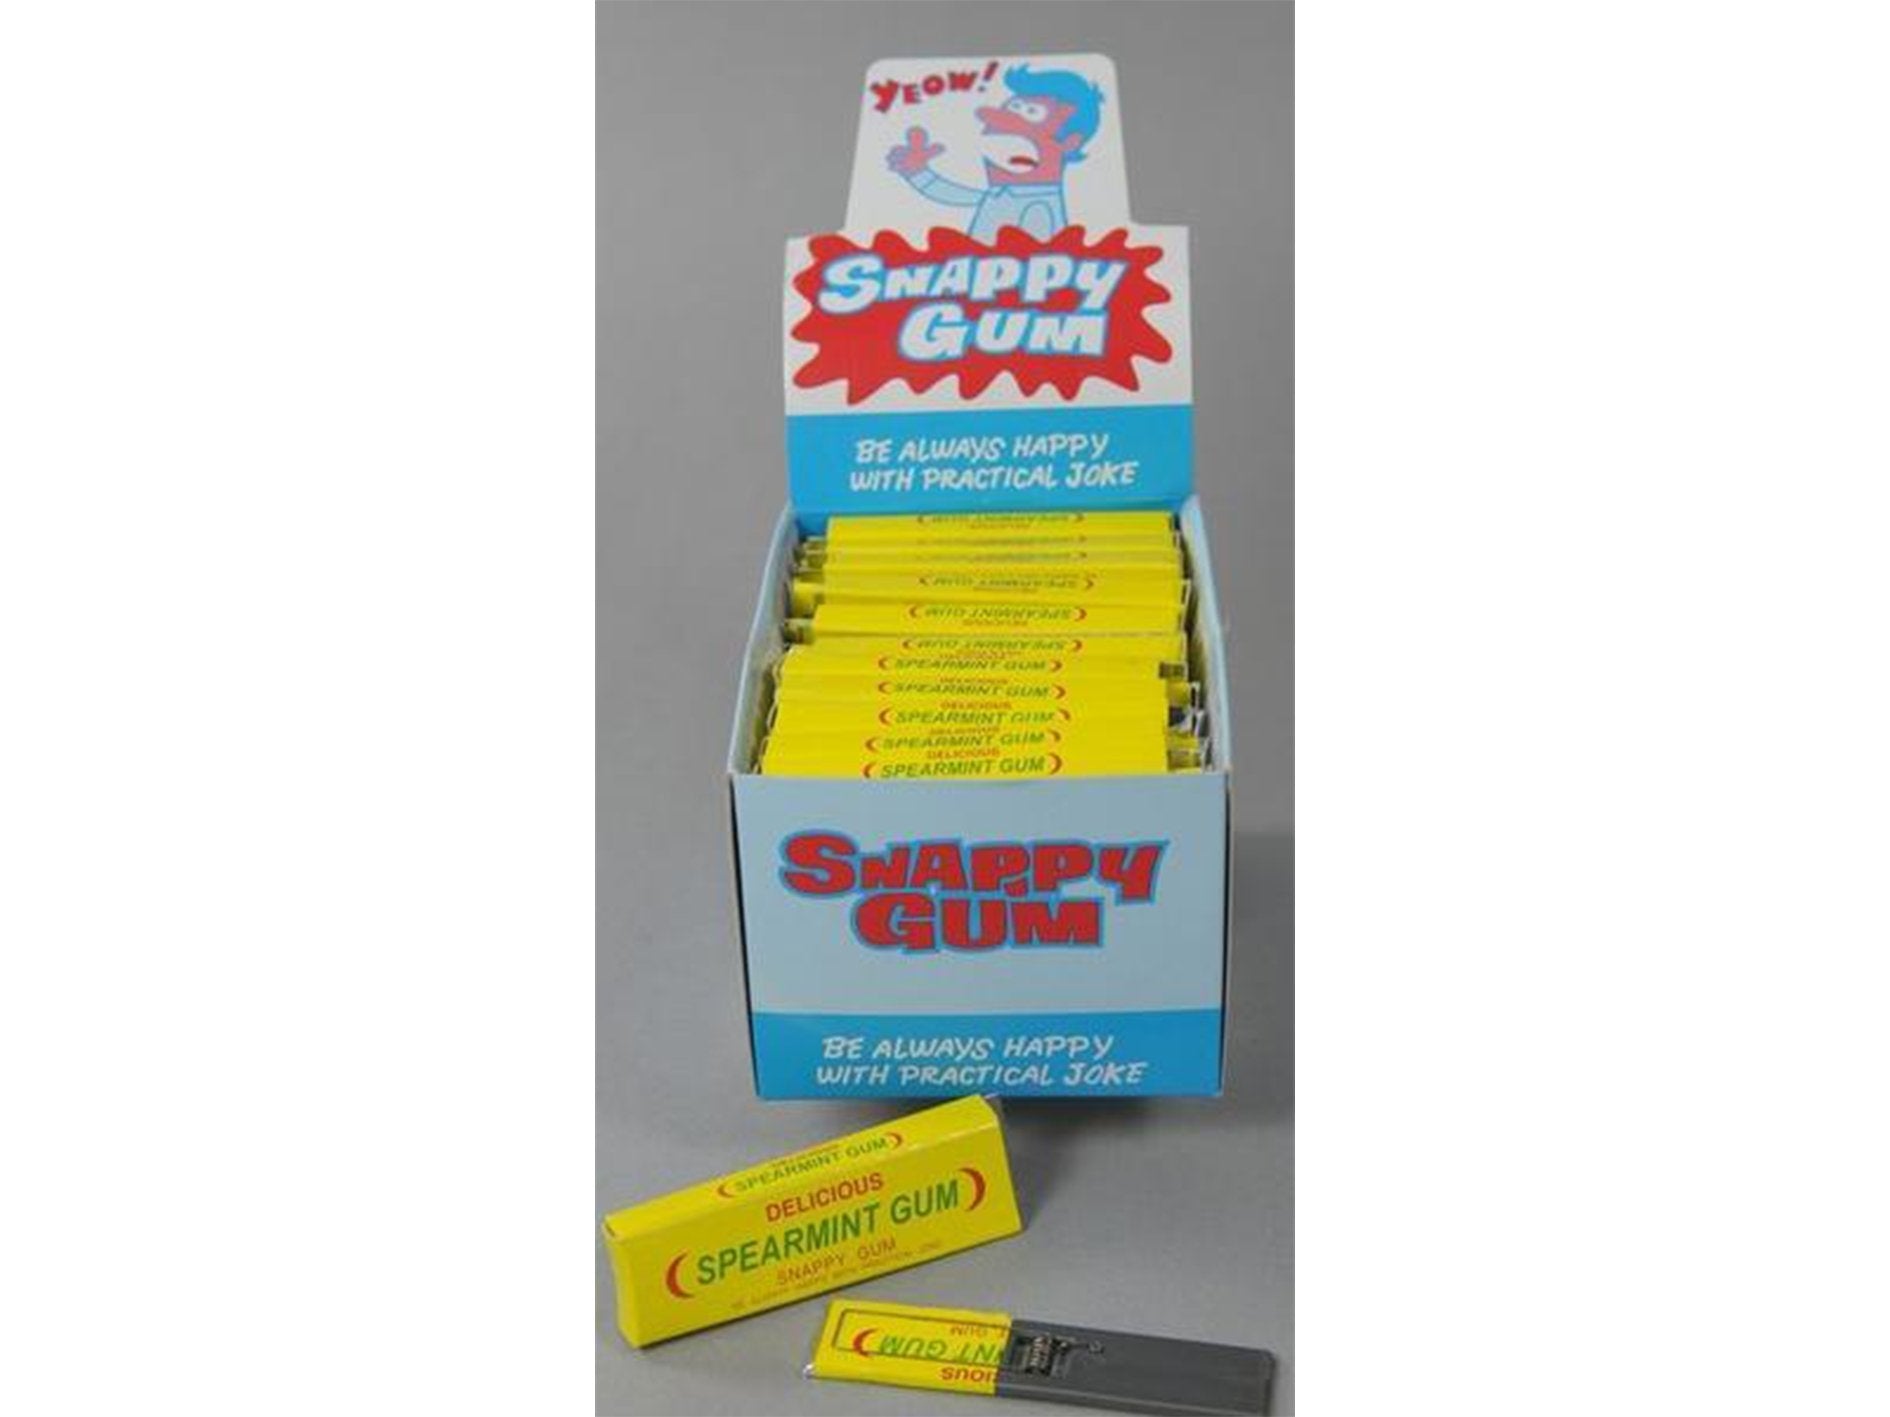 Snappy Gum Practical Joke - VIR Wholesale